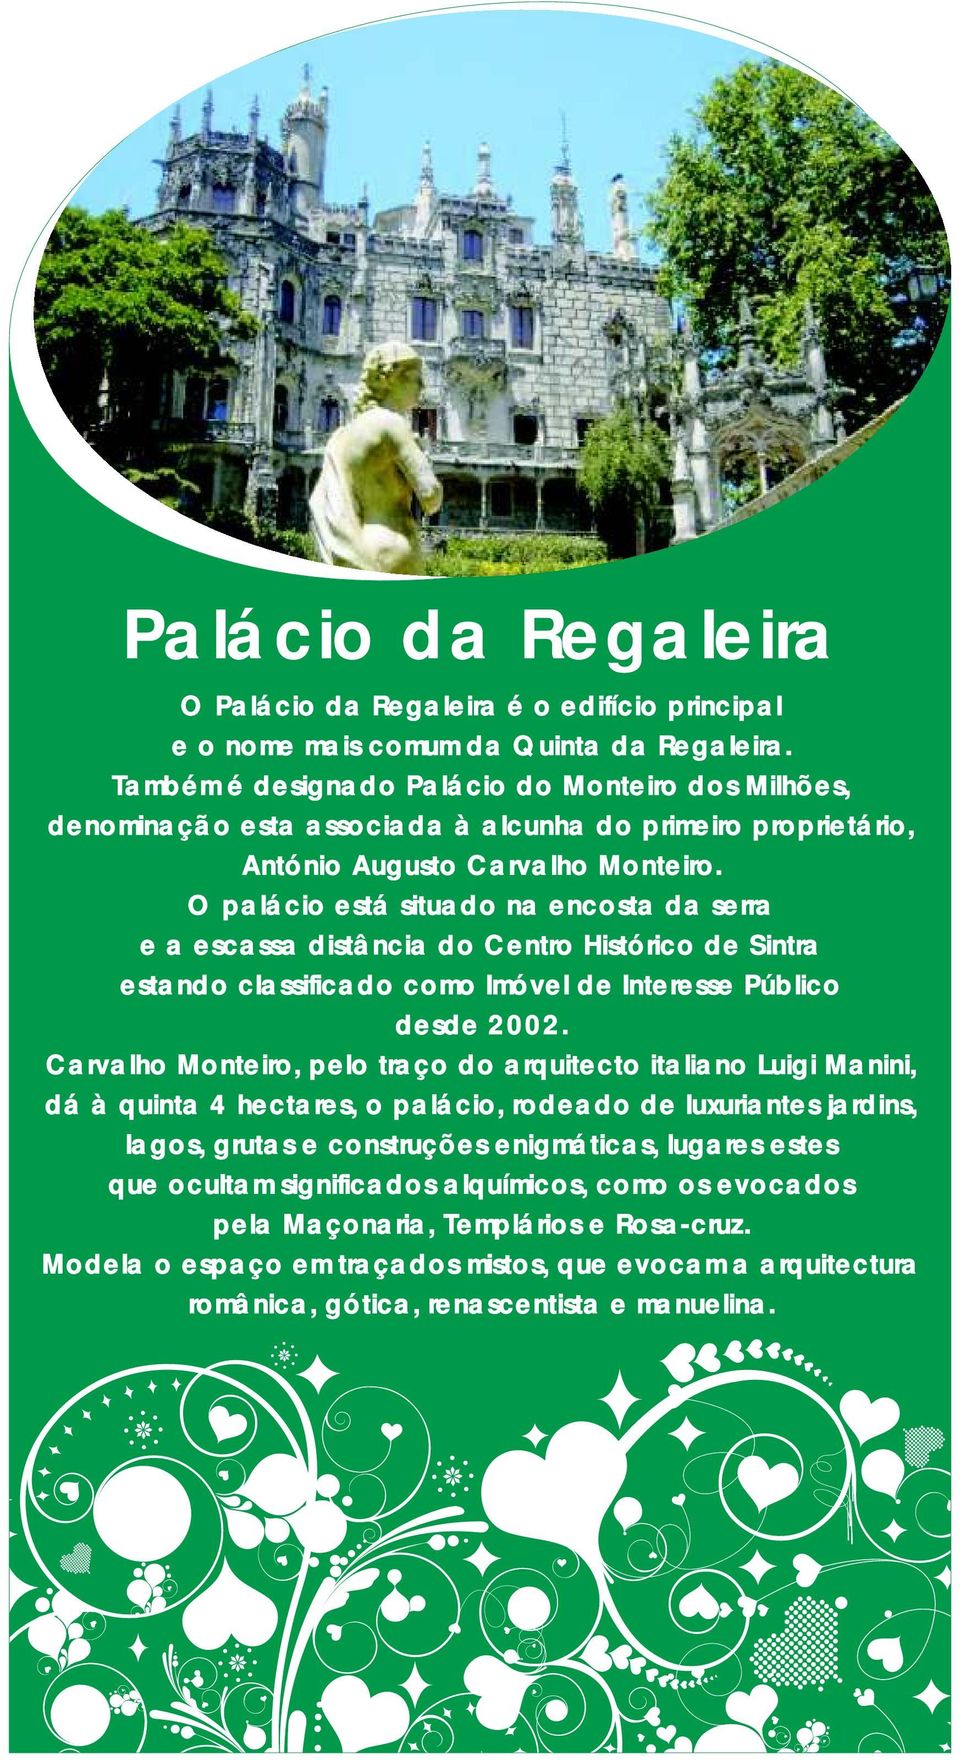 O palácio está situado na encosta da serra e a escassa distância do Centro Histórico de Sintra estando classificado como Imóvel de Interesse Público desde 2002.